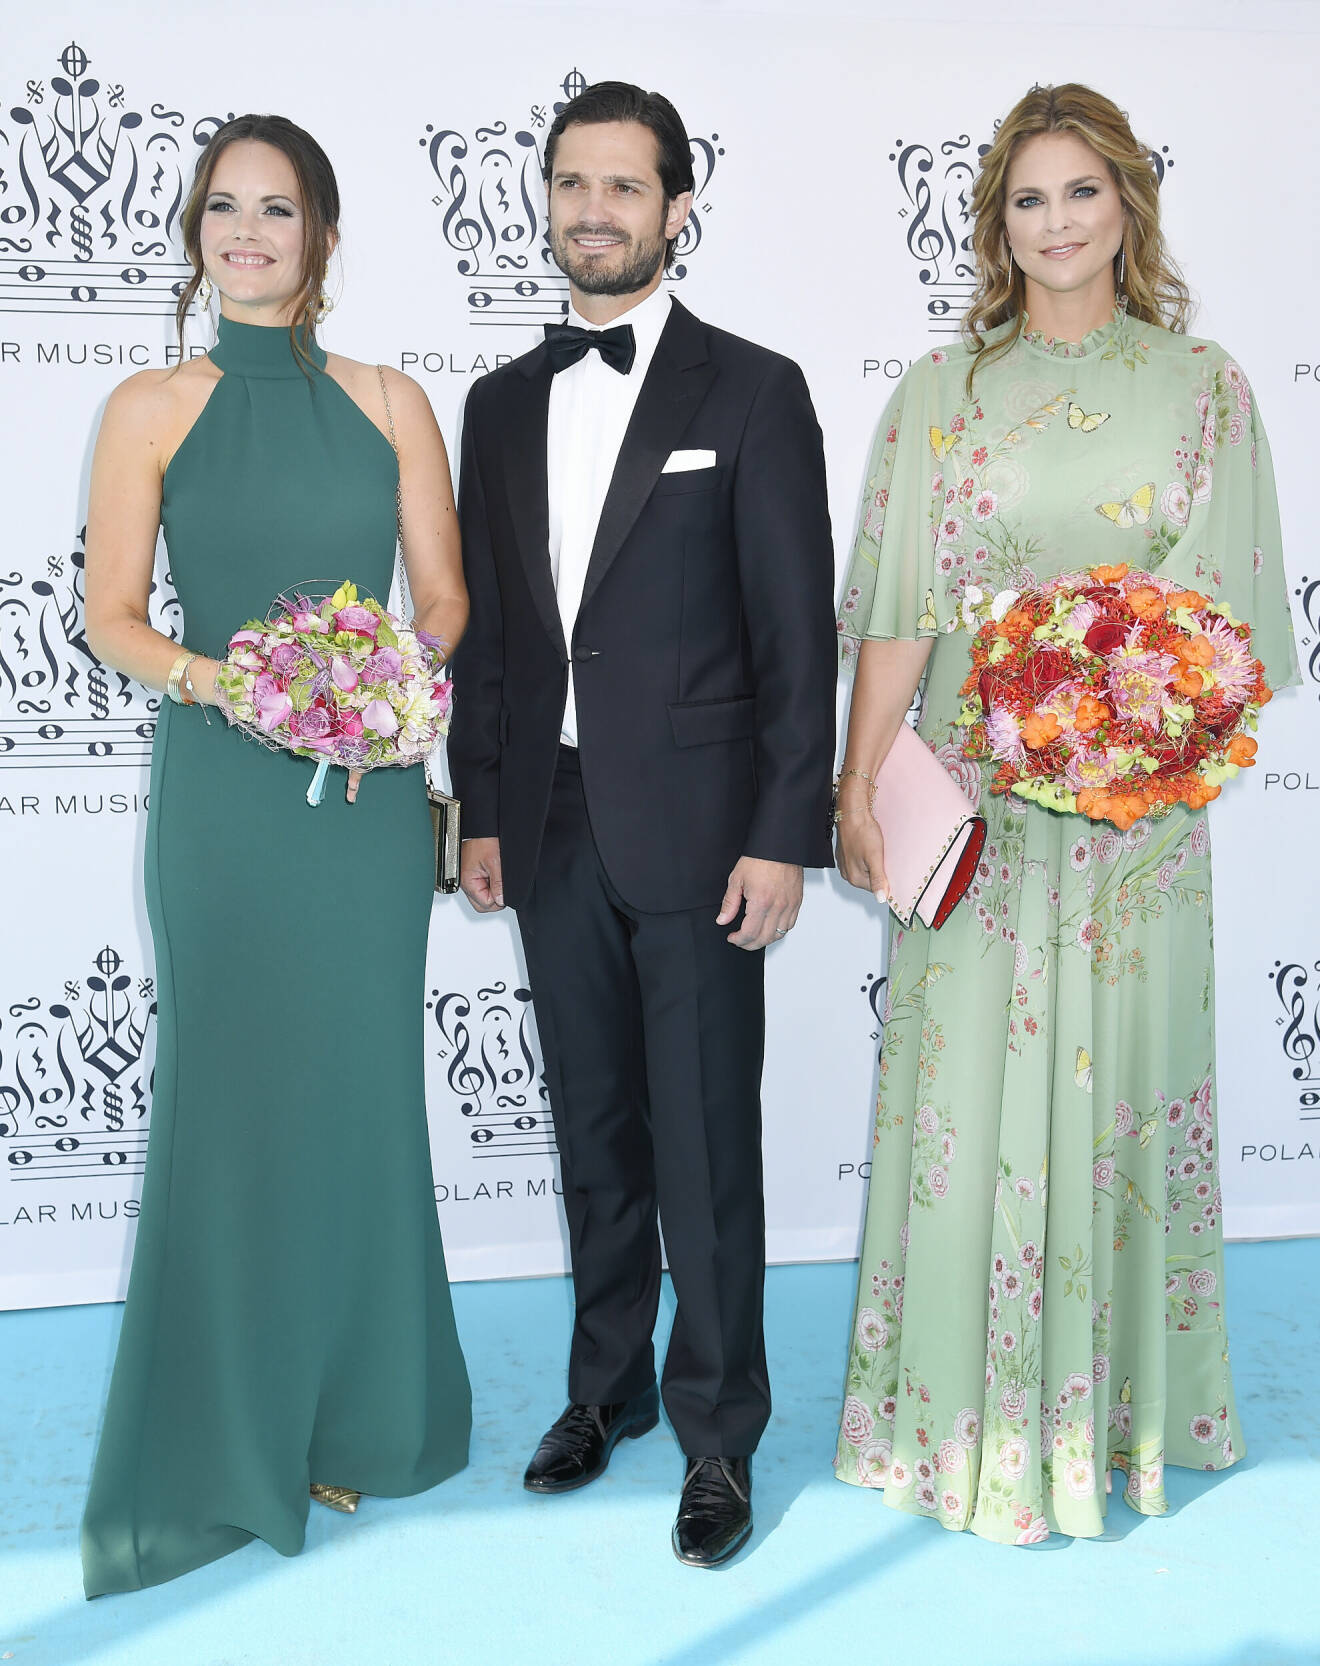 Prinsessan Sofia, prins Carl Philip och prinsessan Madeleine på Polarpriset 2018.